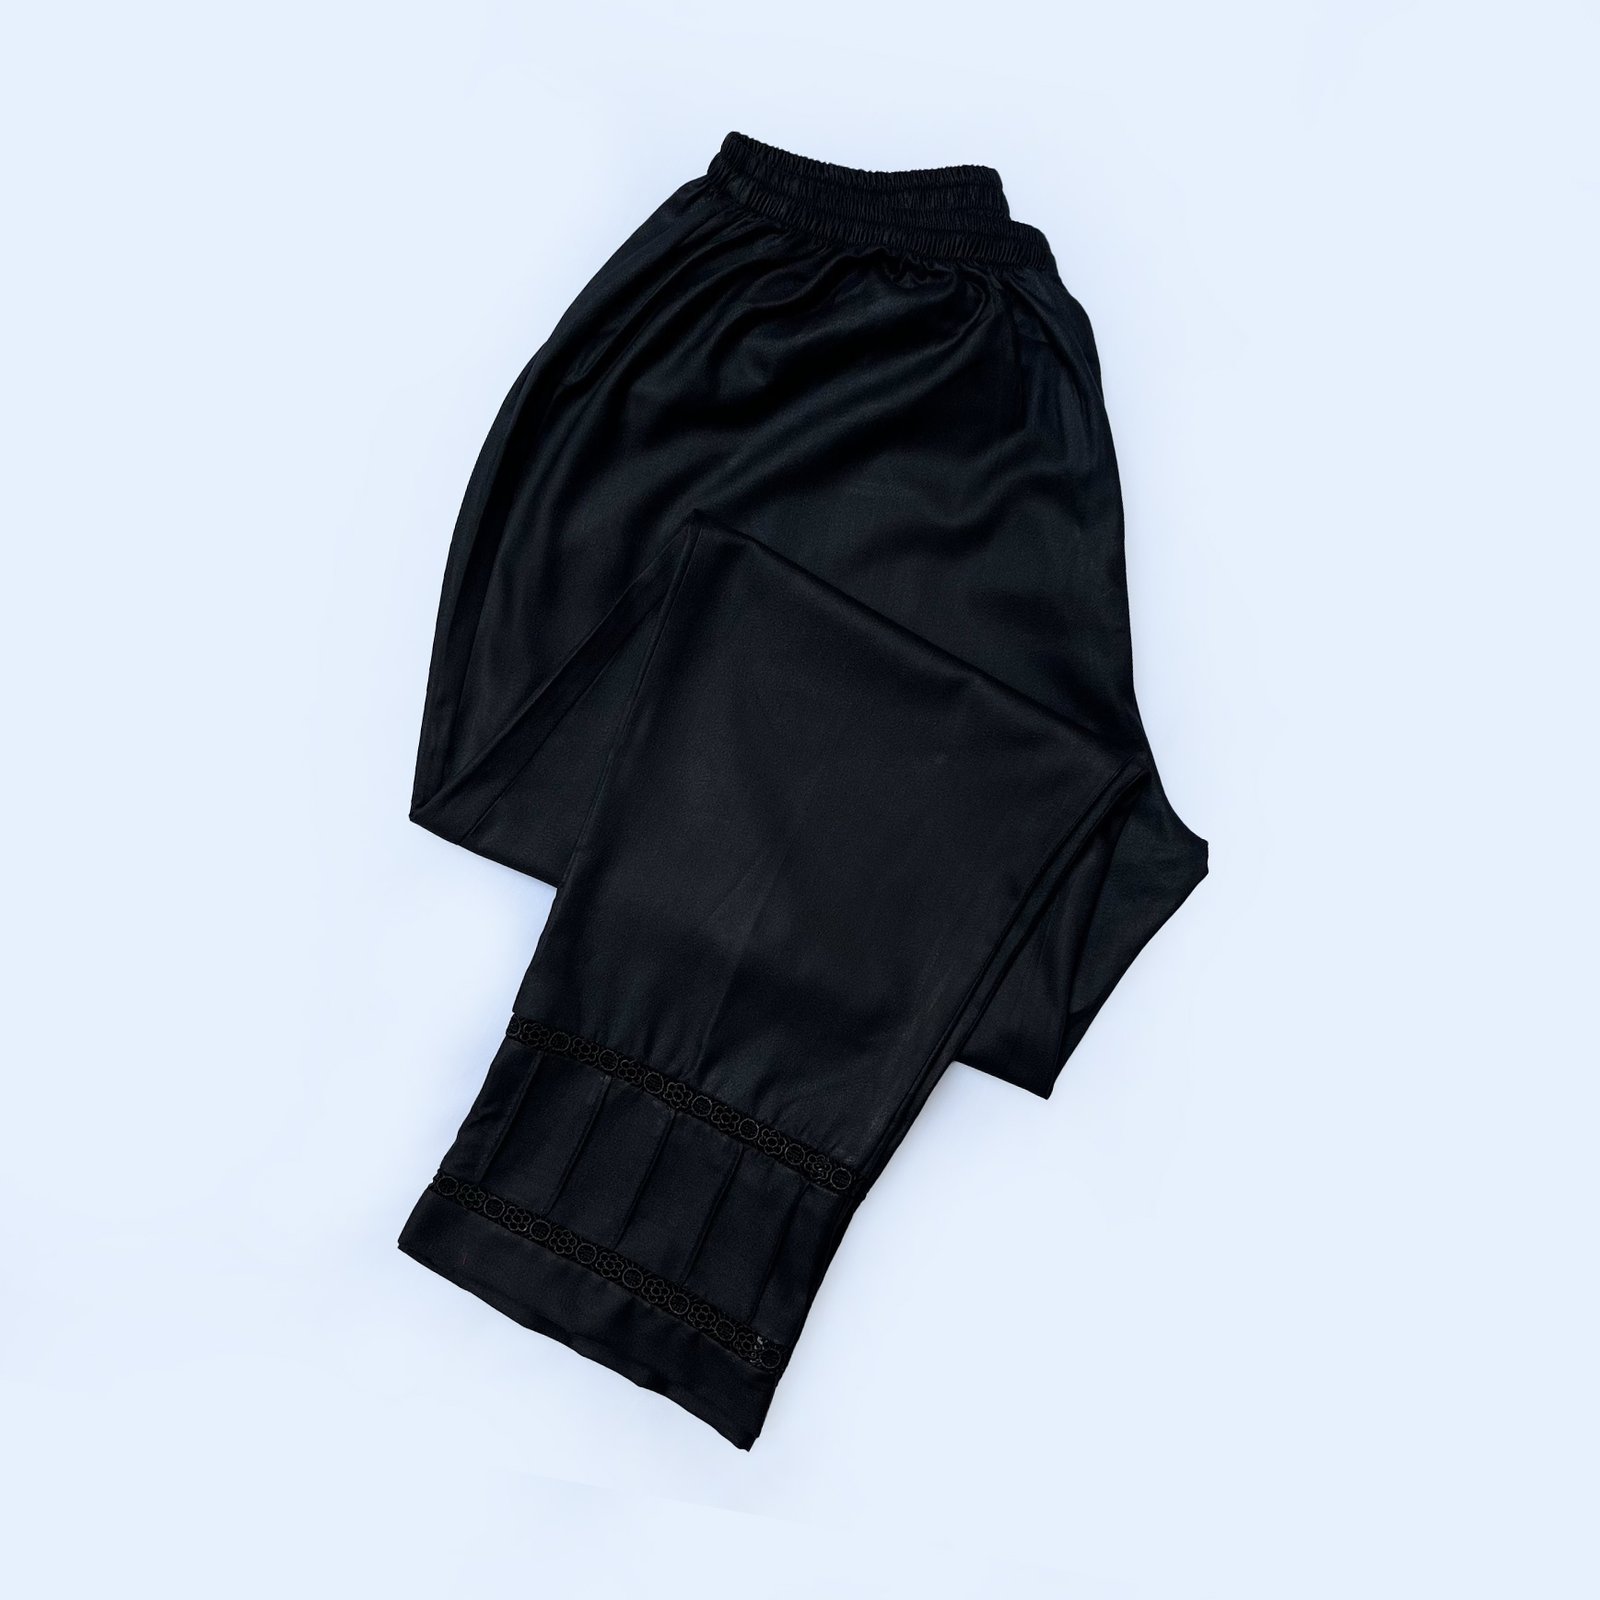 Black Color Pakistani Trouser For Women